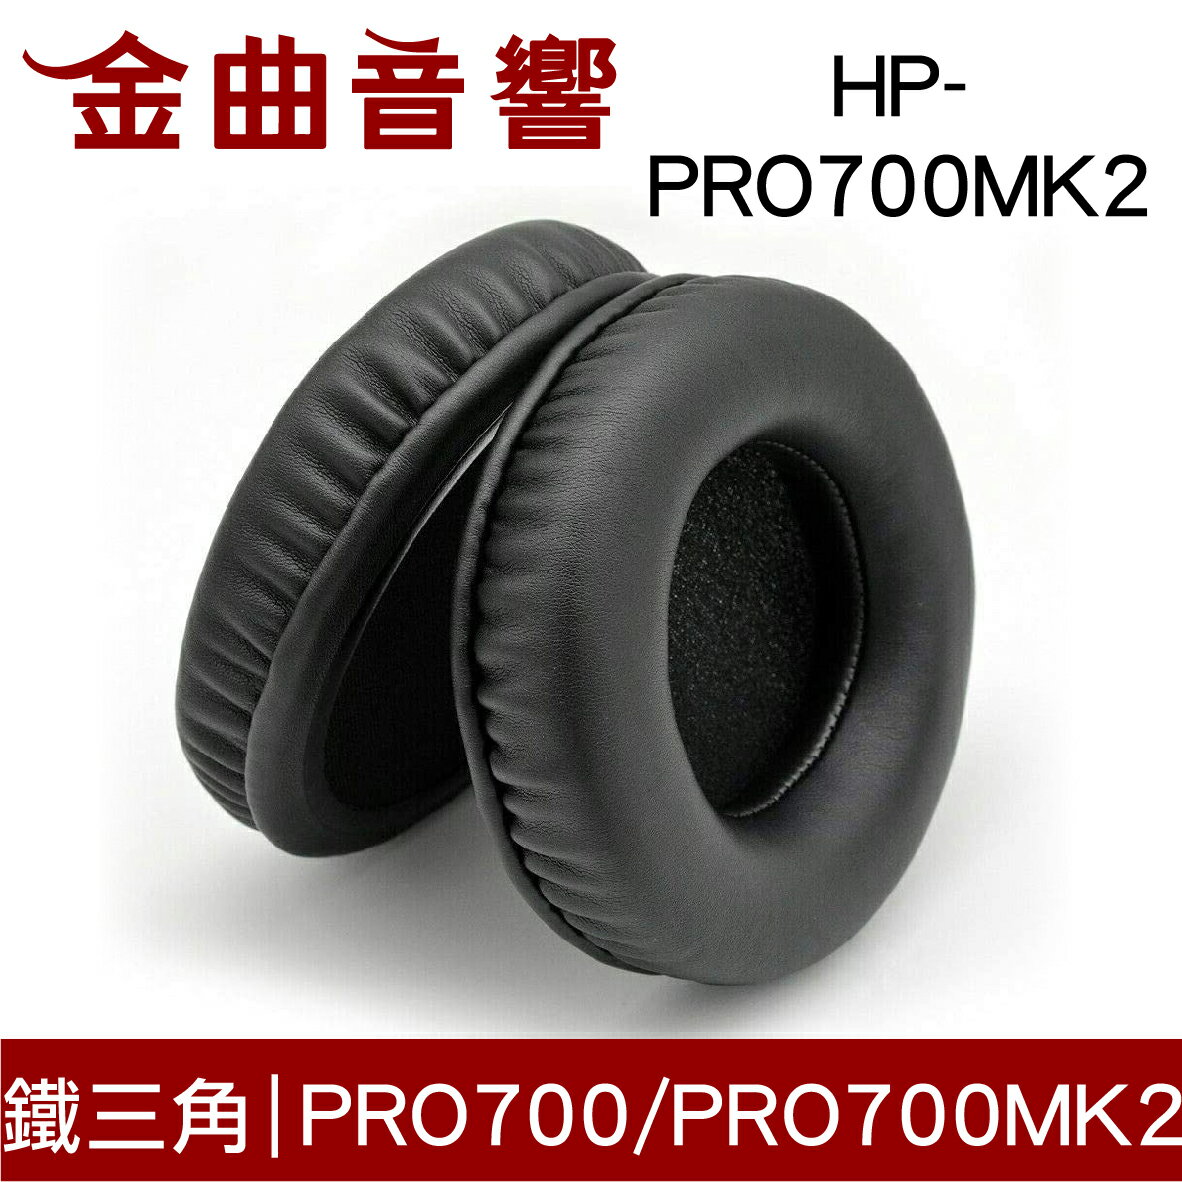 鐵三角 HP-PRO700MK2 替換耳罩 一對 ATH-PRO700 ATH-PRO700MK2 適用 | 金曲音響